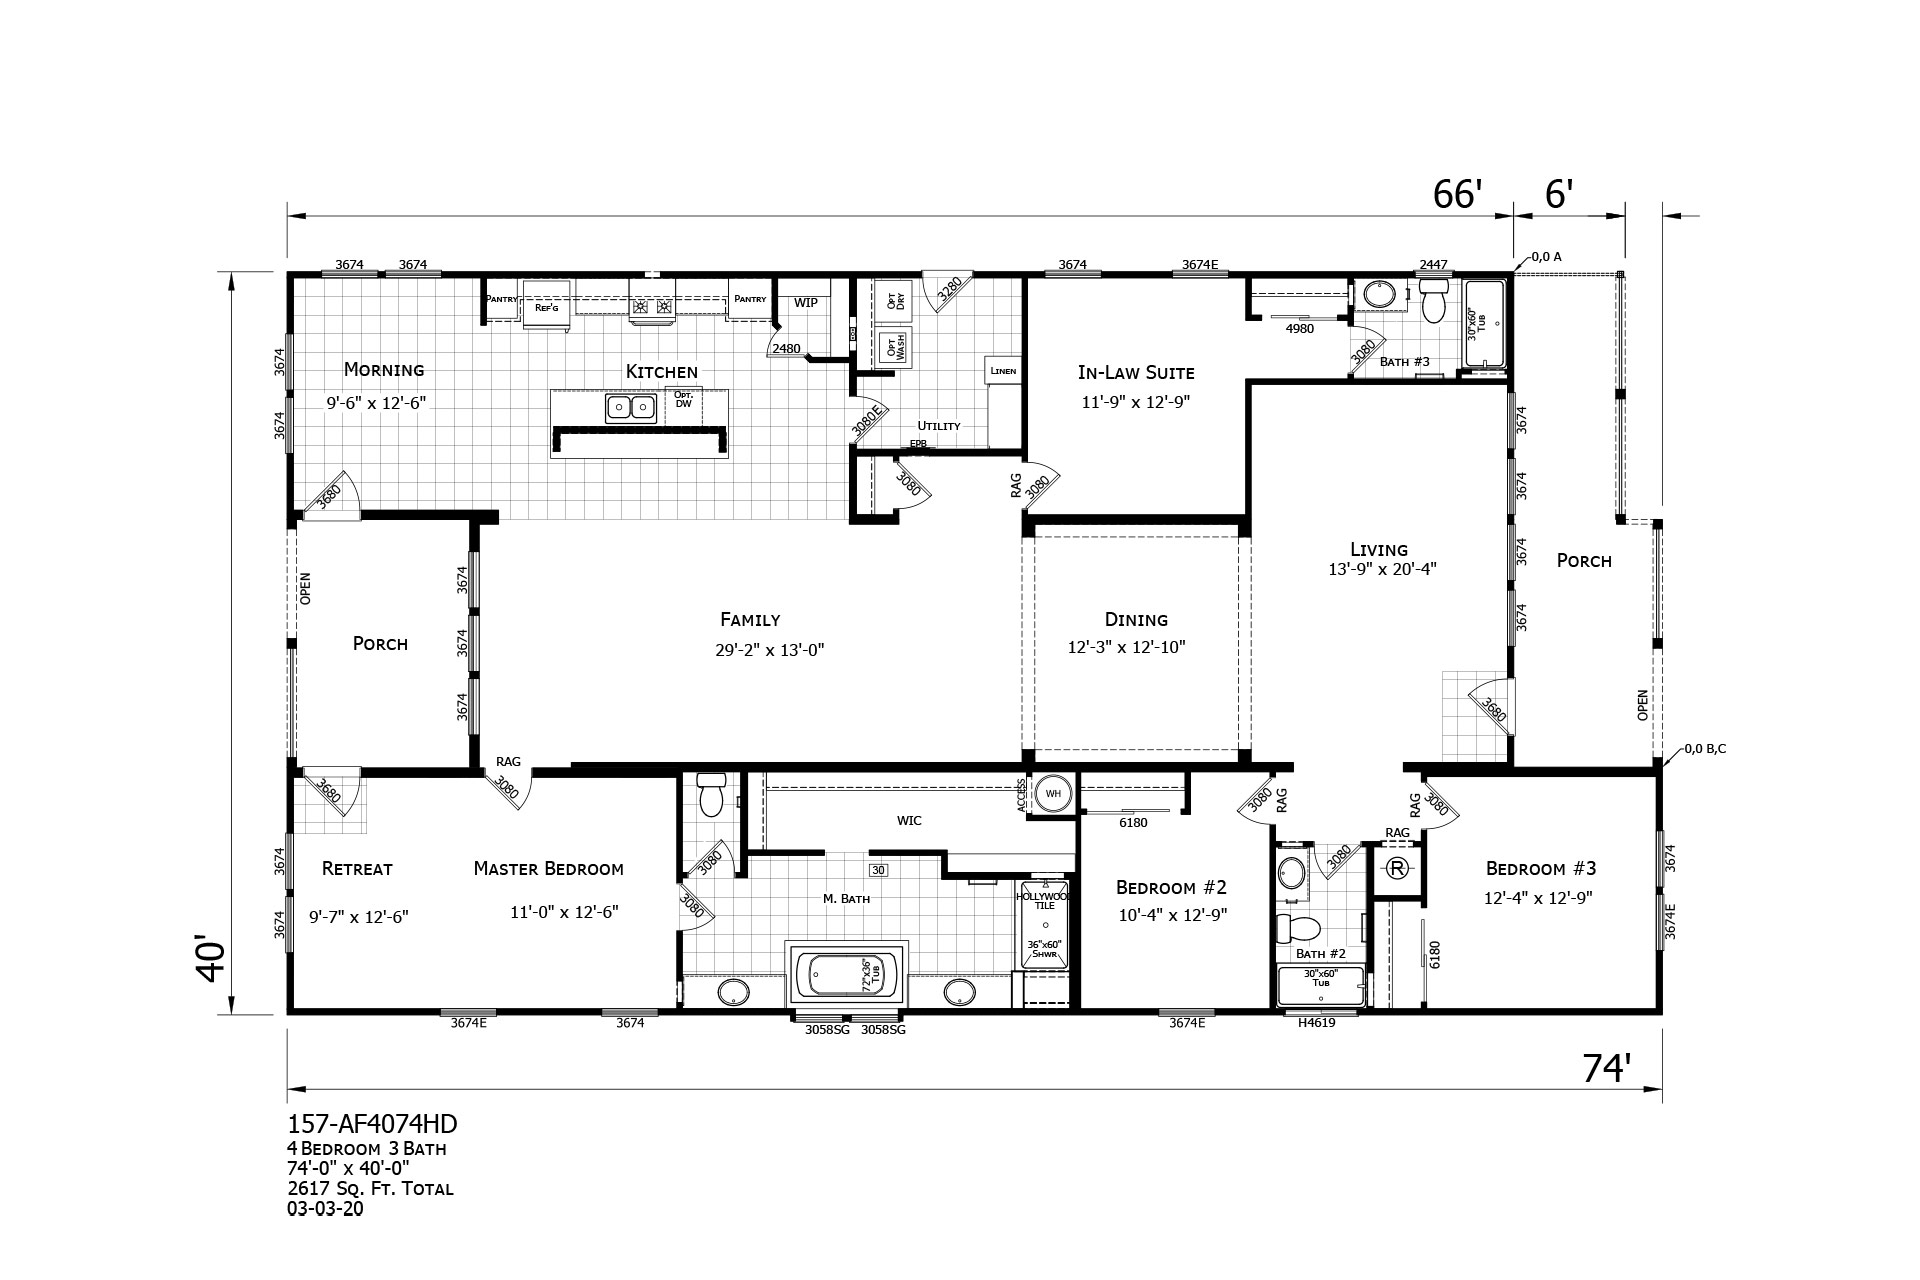 Homes Direct Modular Homes - Model AF4074HD - Floorplan